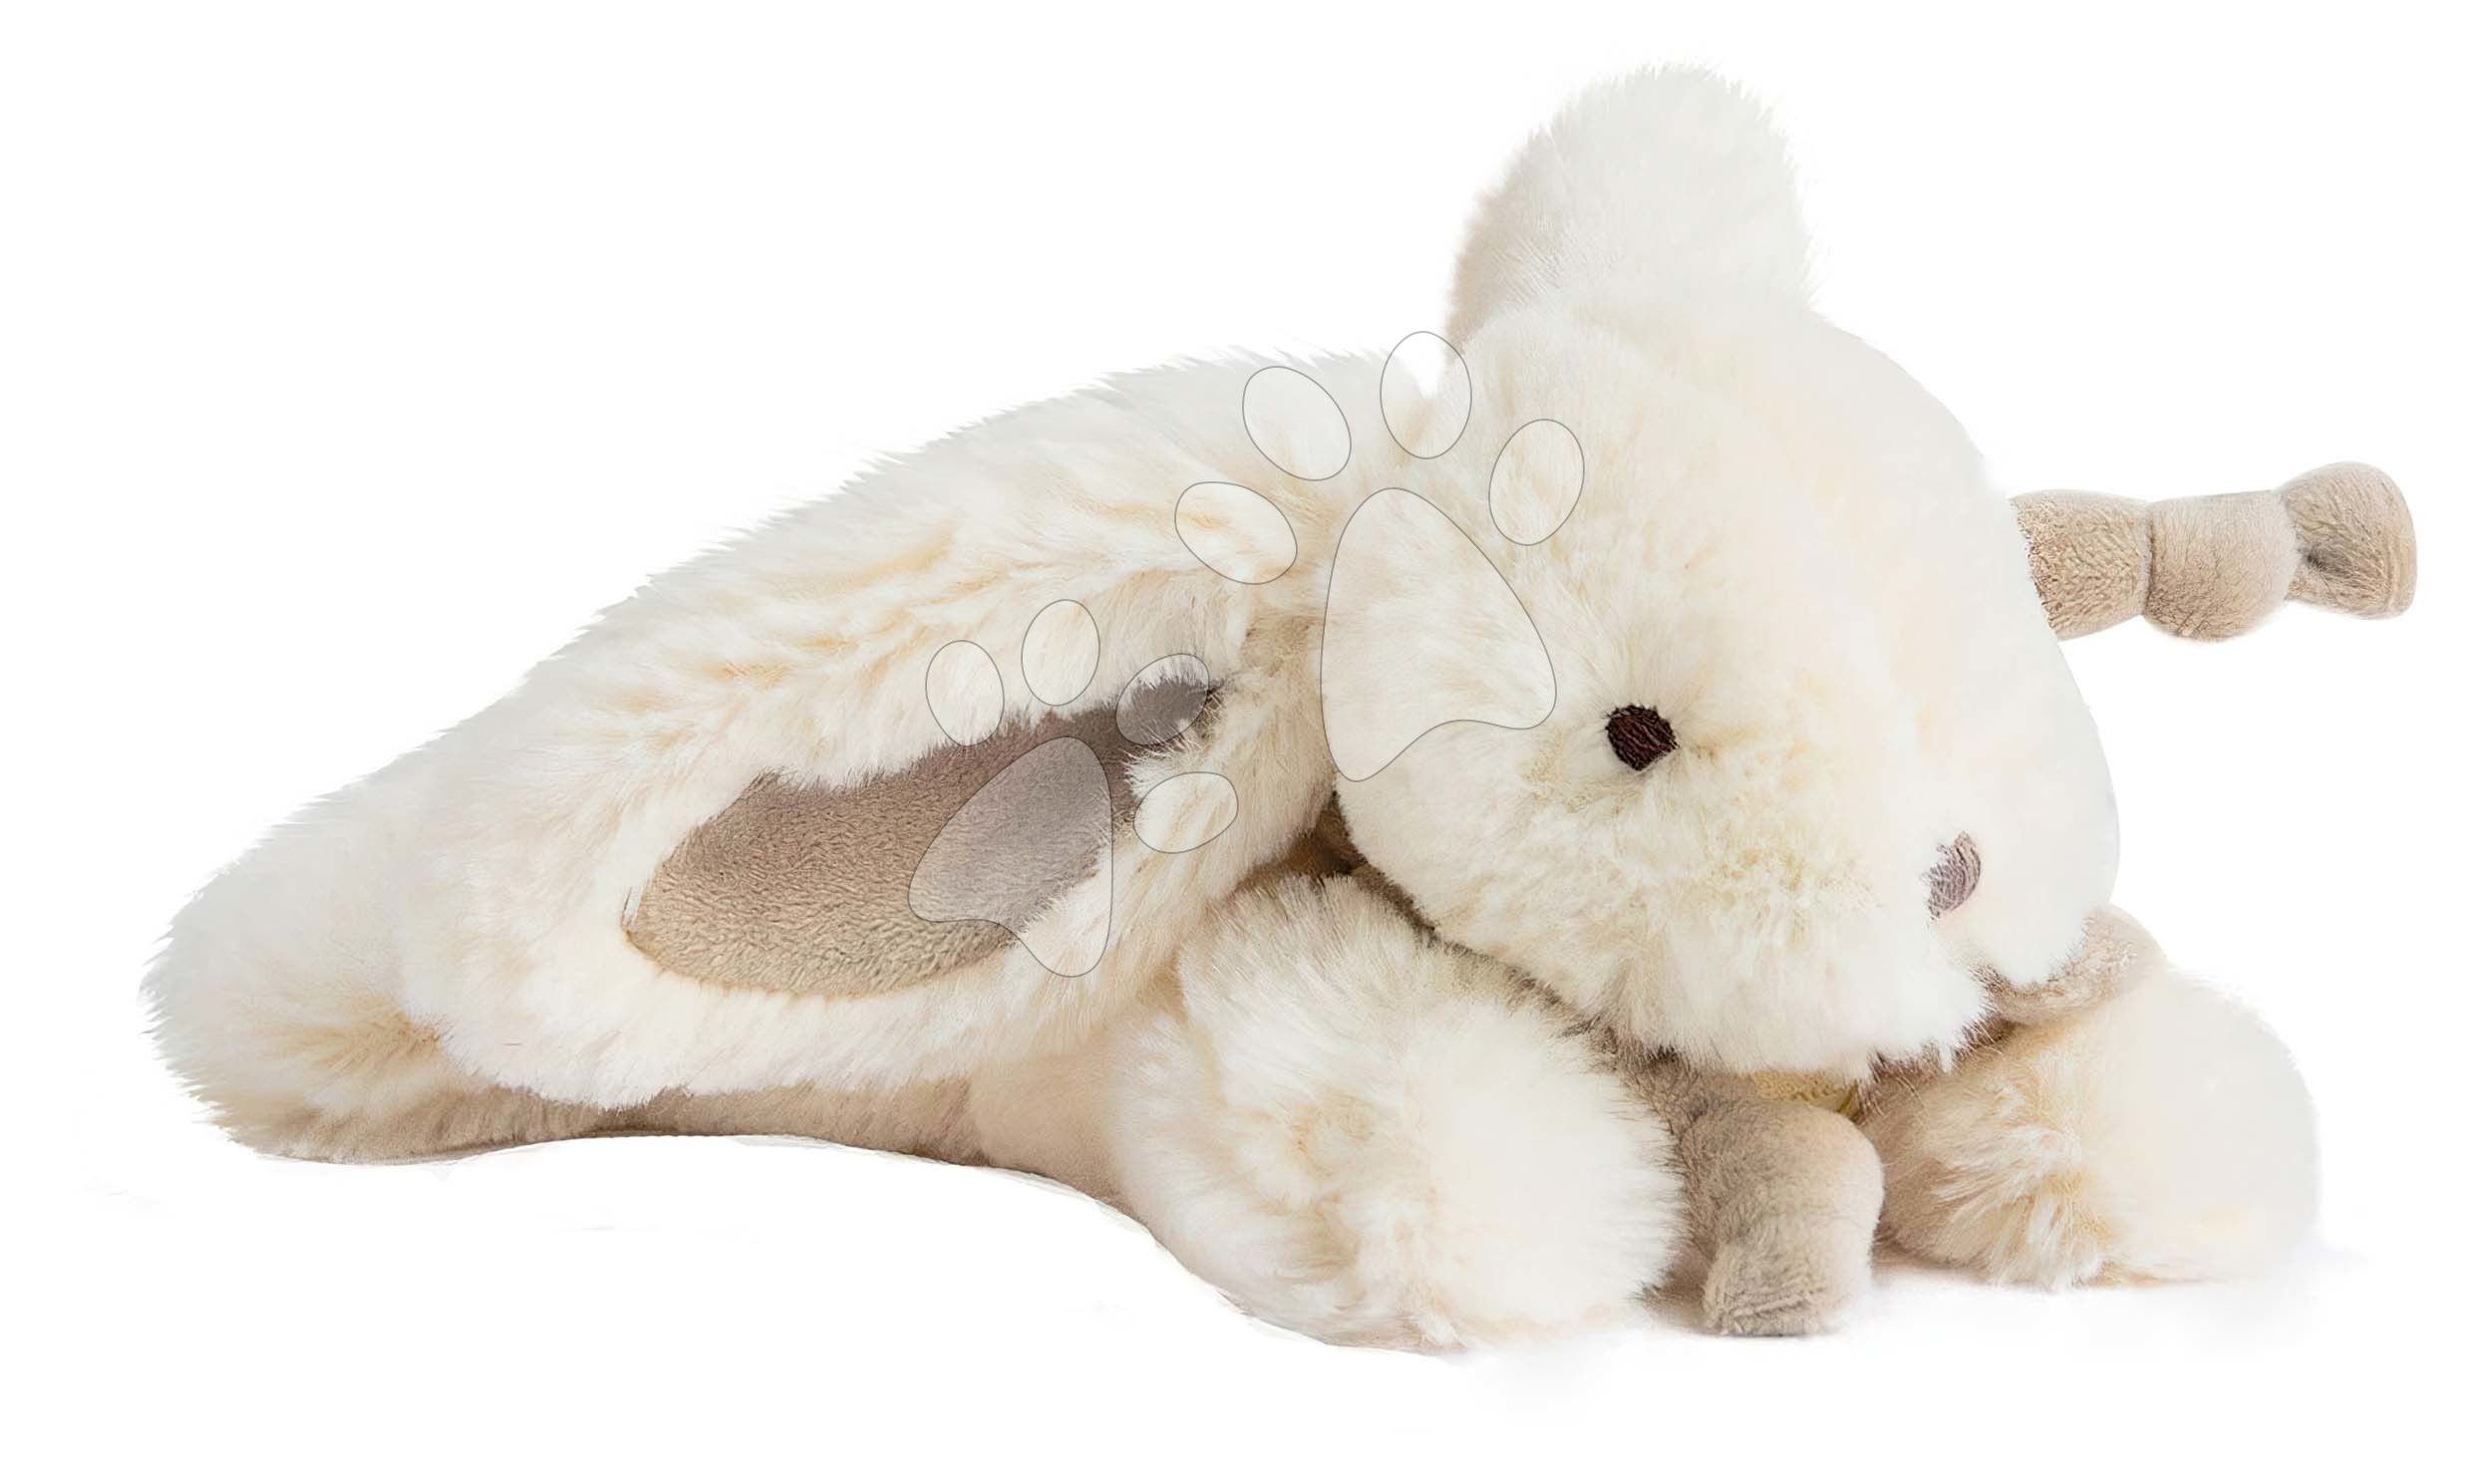 Plyšový zajačik Lapin Bonbon Doudou et Compagnie béžový 20 cm v darčekovom balení od 0 mes